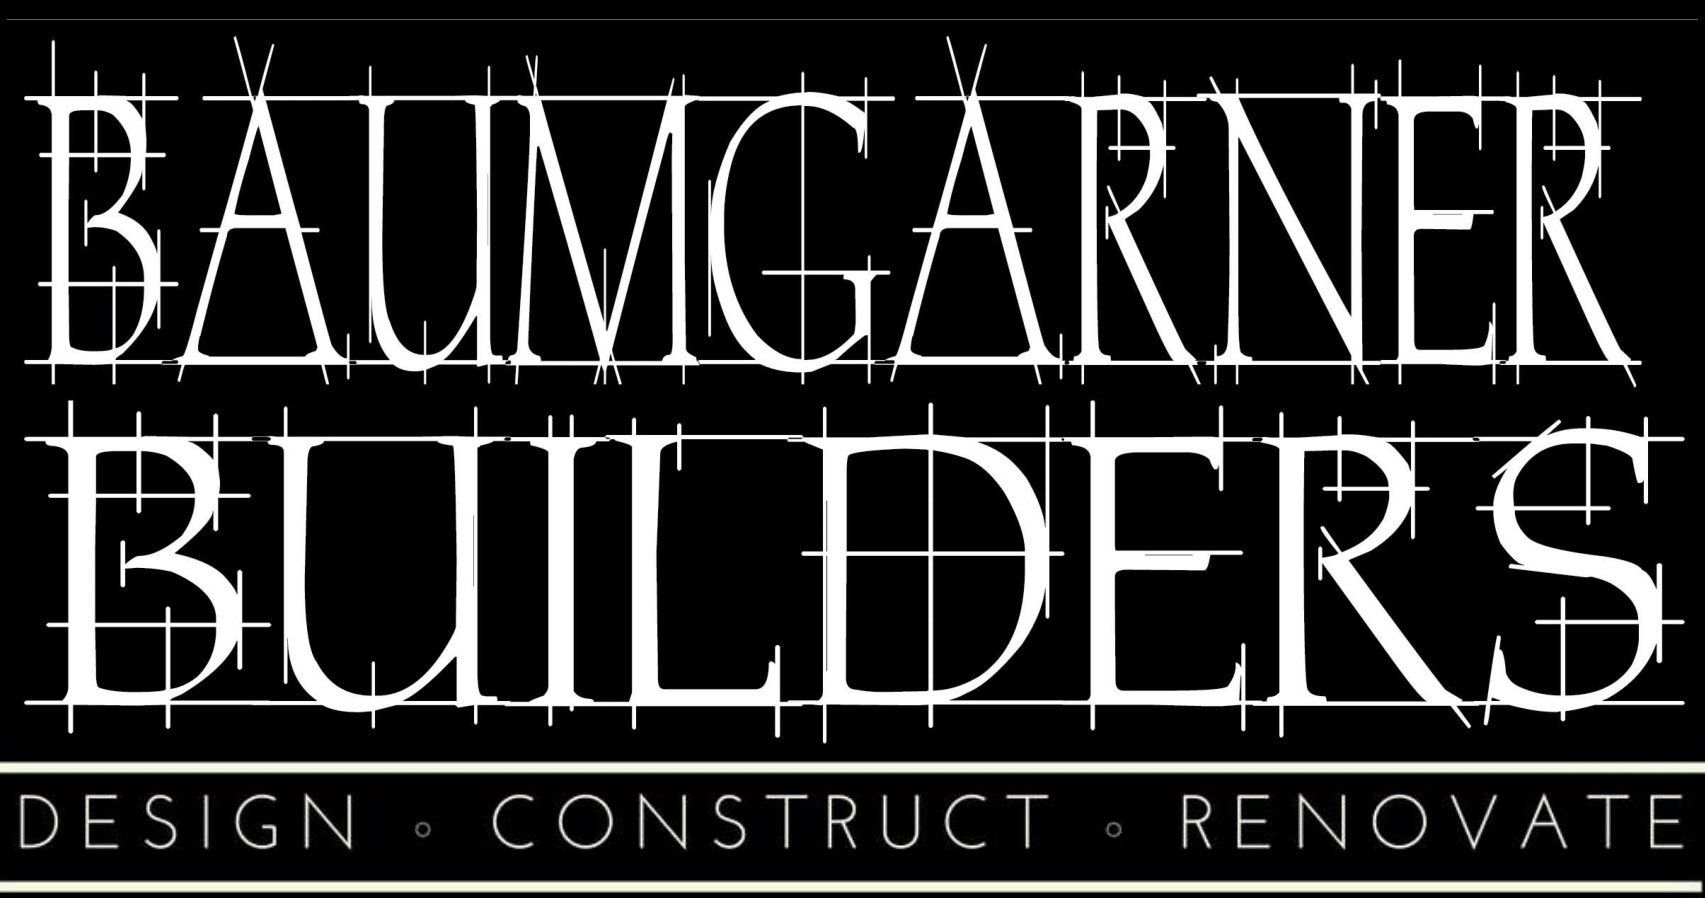 Baumgarner Builders logo